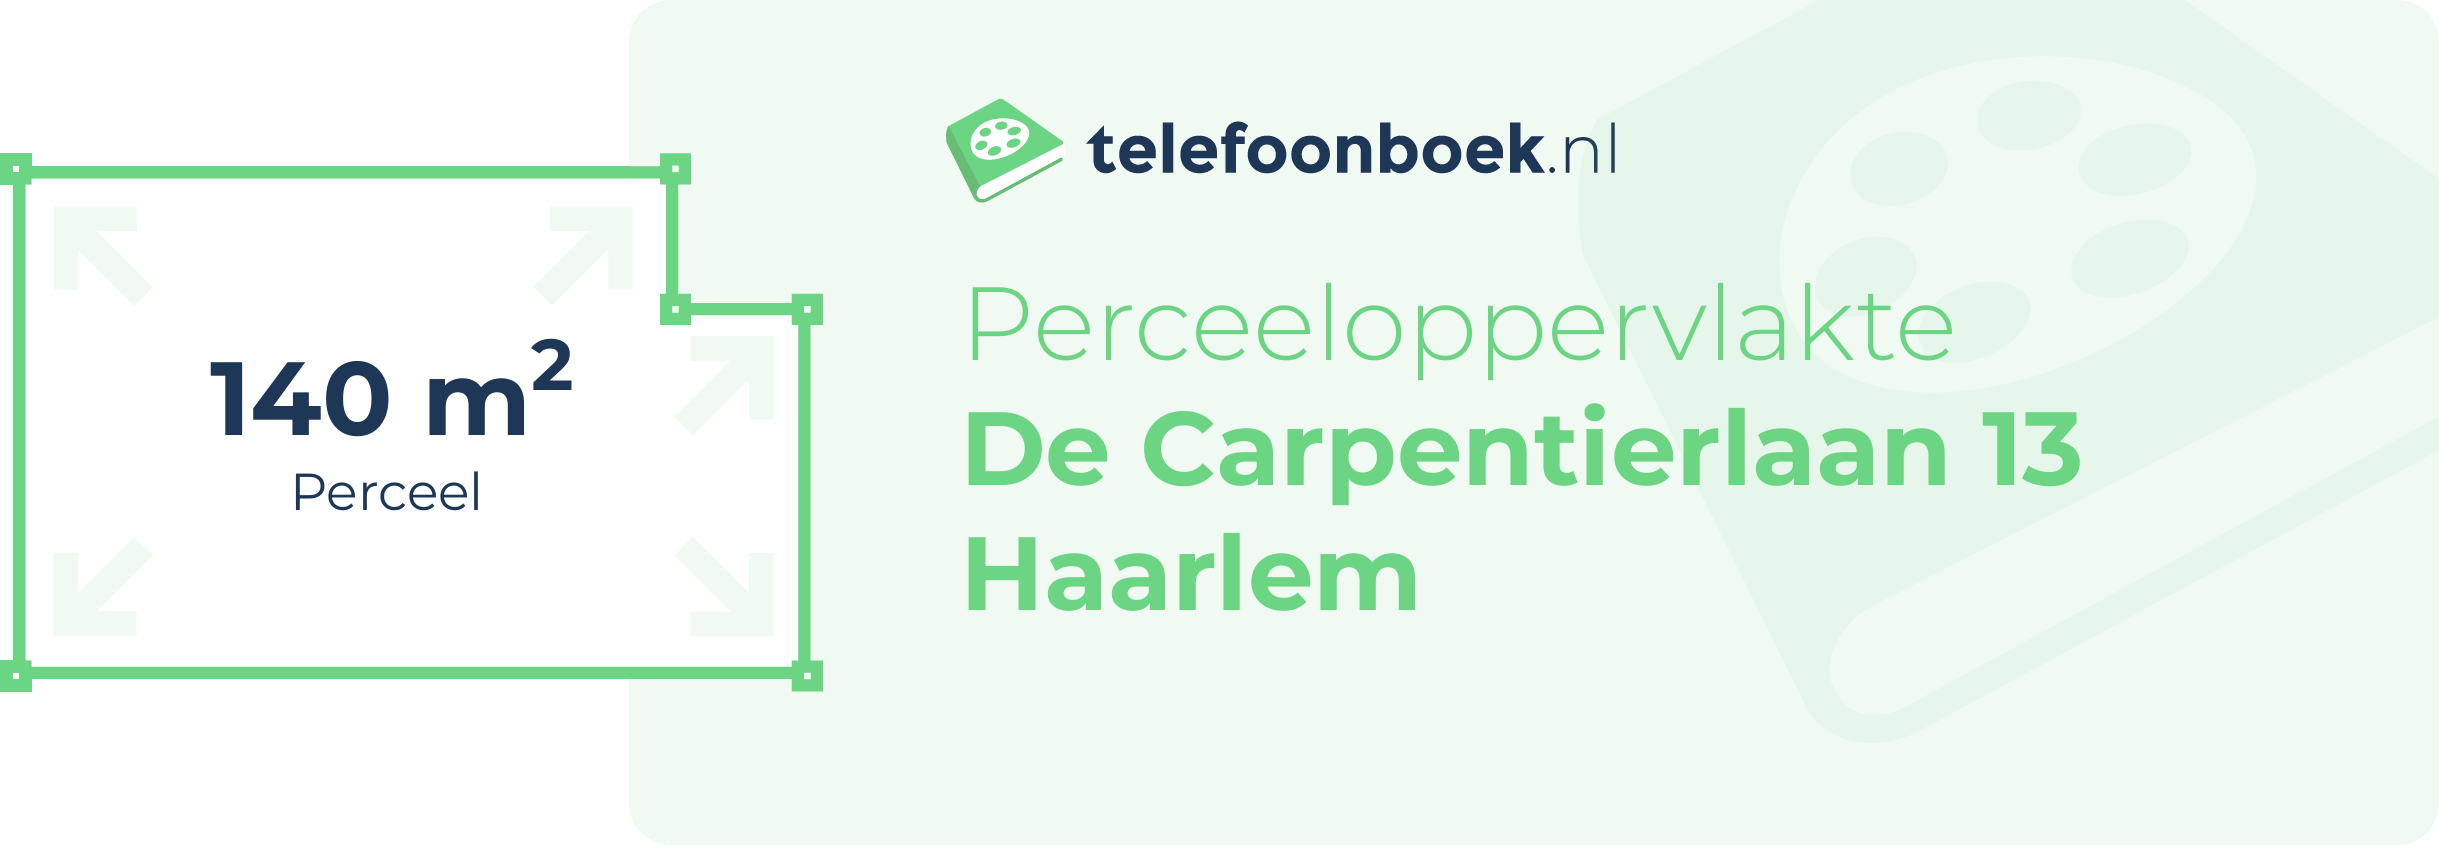 Perceeloppervlakte De Carpentierlaan 13 Haarlem